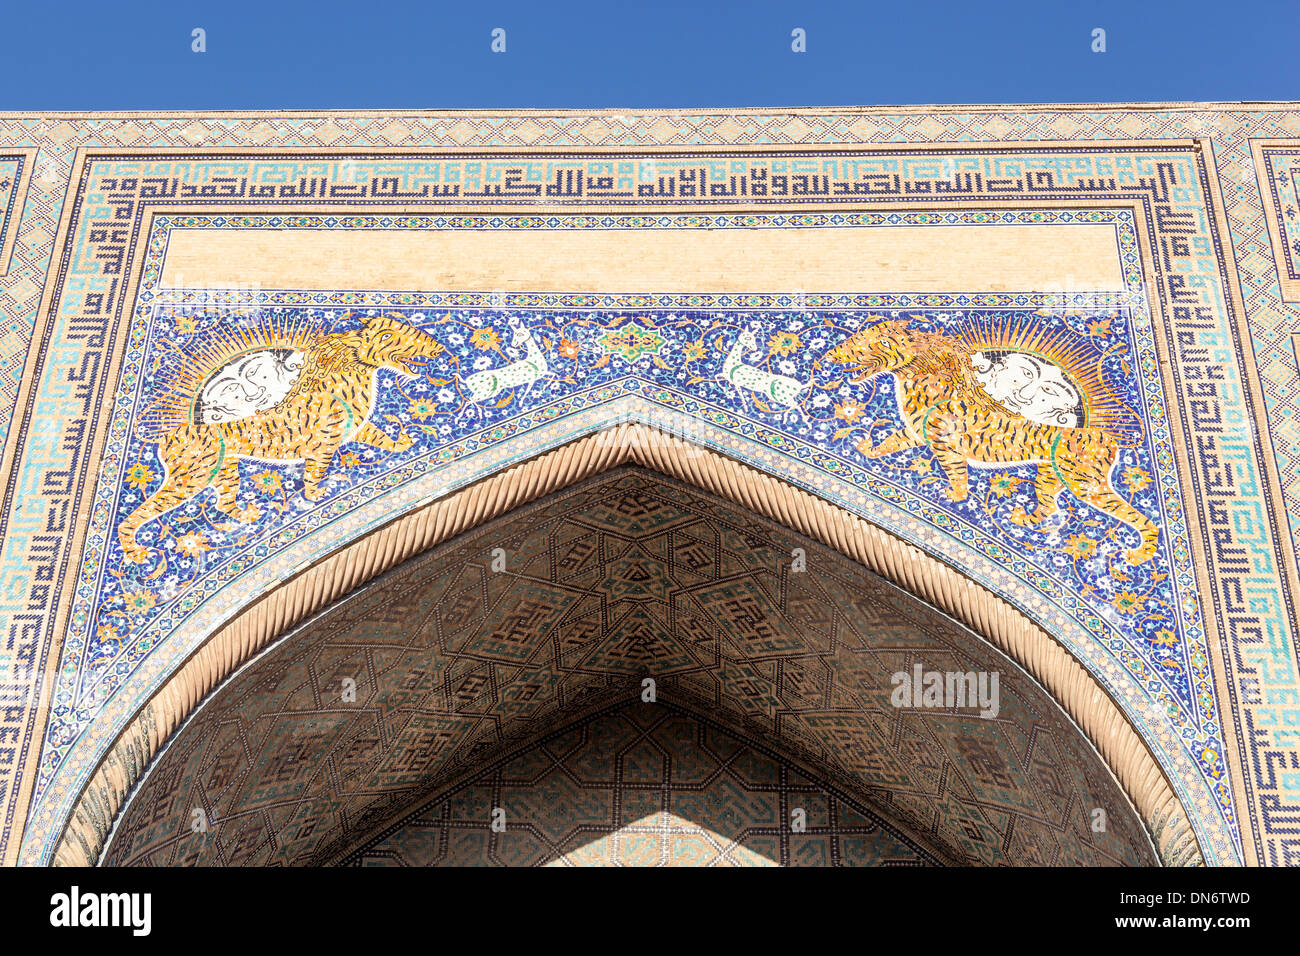 Front facade of Sher Dor Madrasah, also known as Shir Dor Madrasah, Registan Square, Samarkand, Uzbekistan Stock Photo